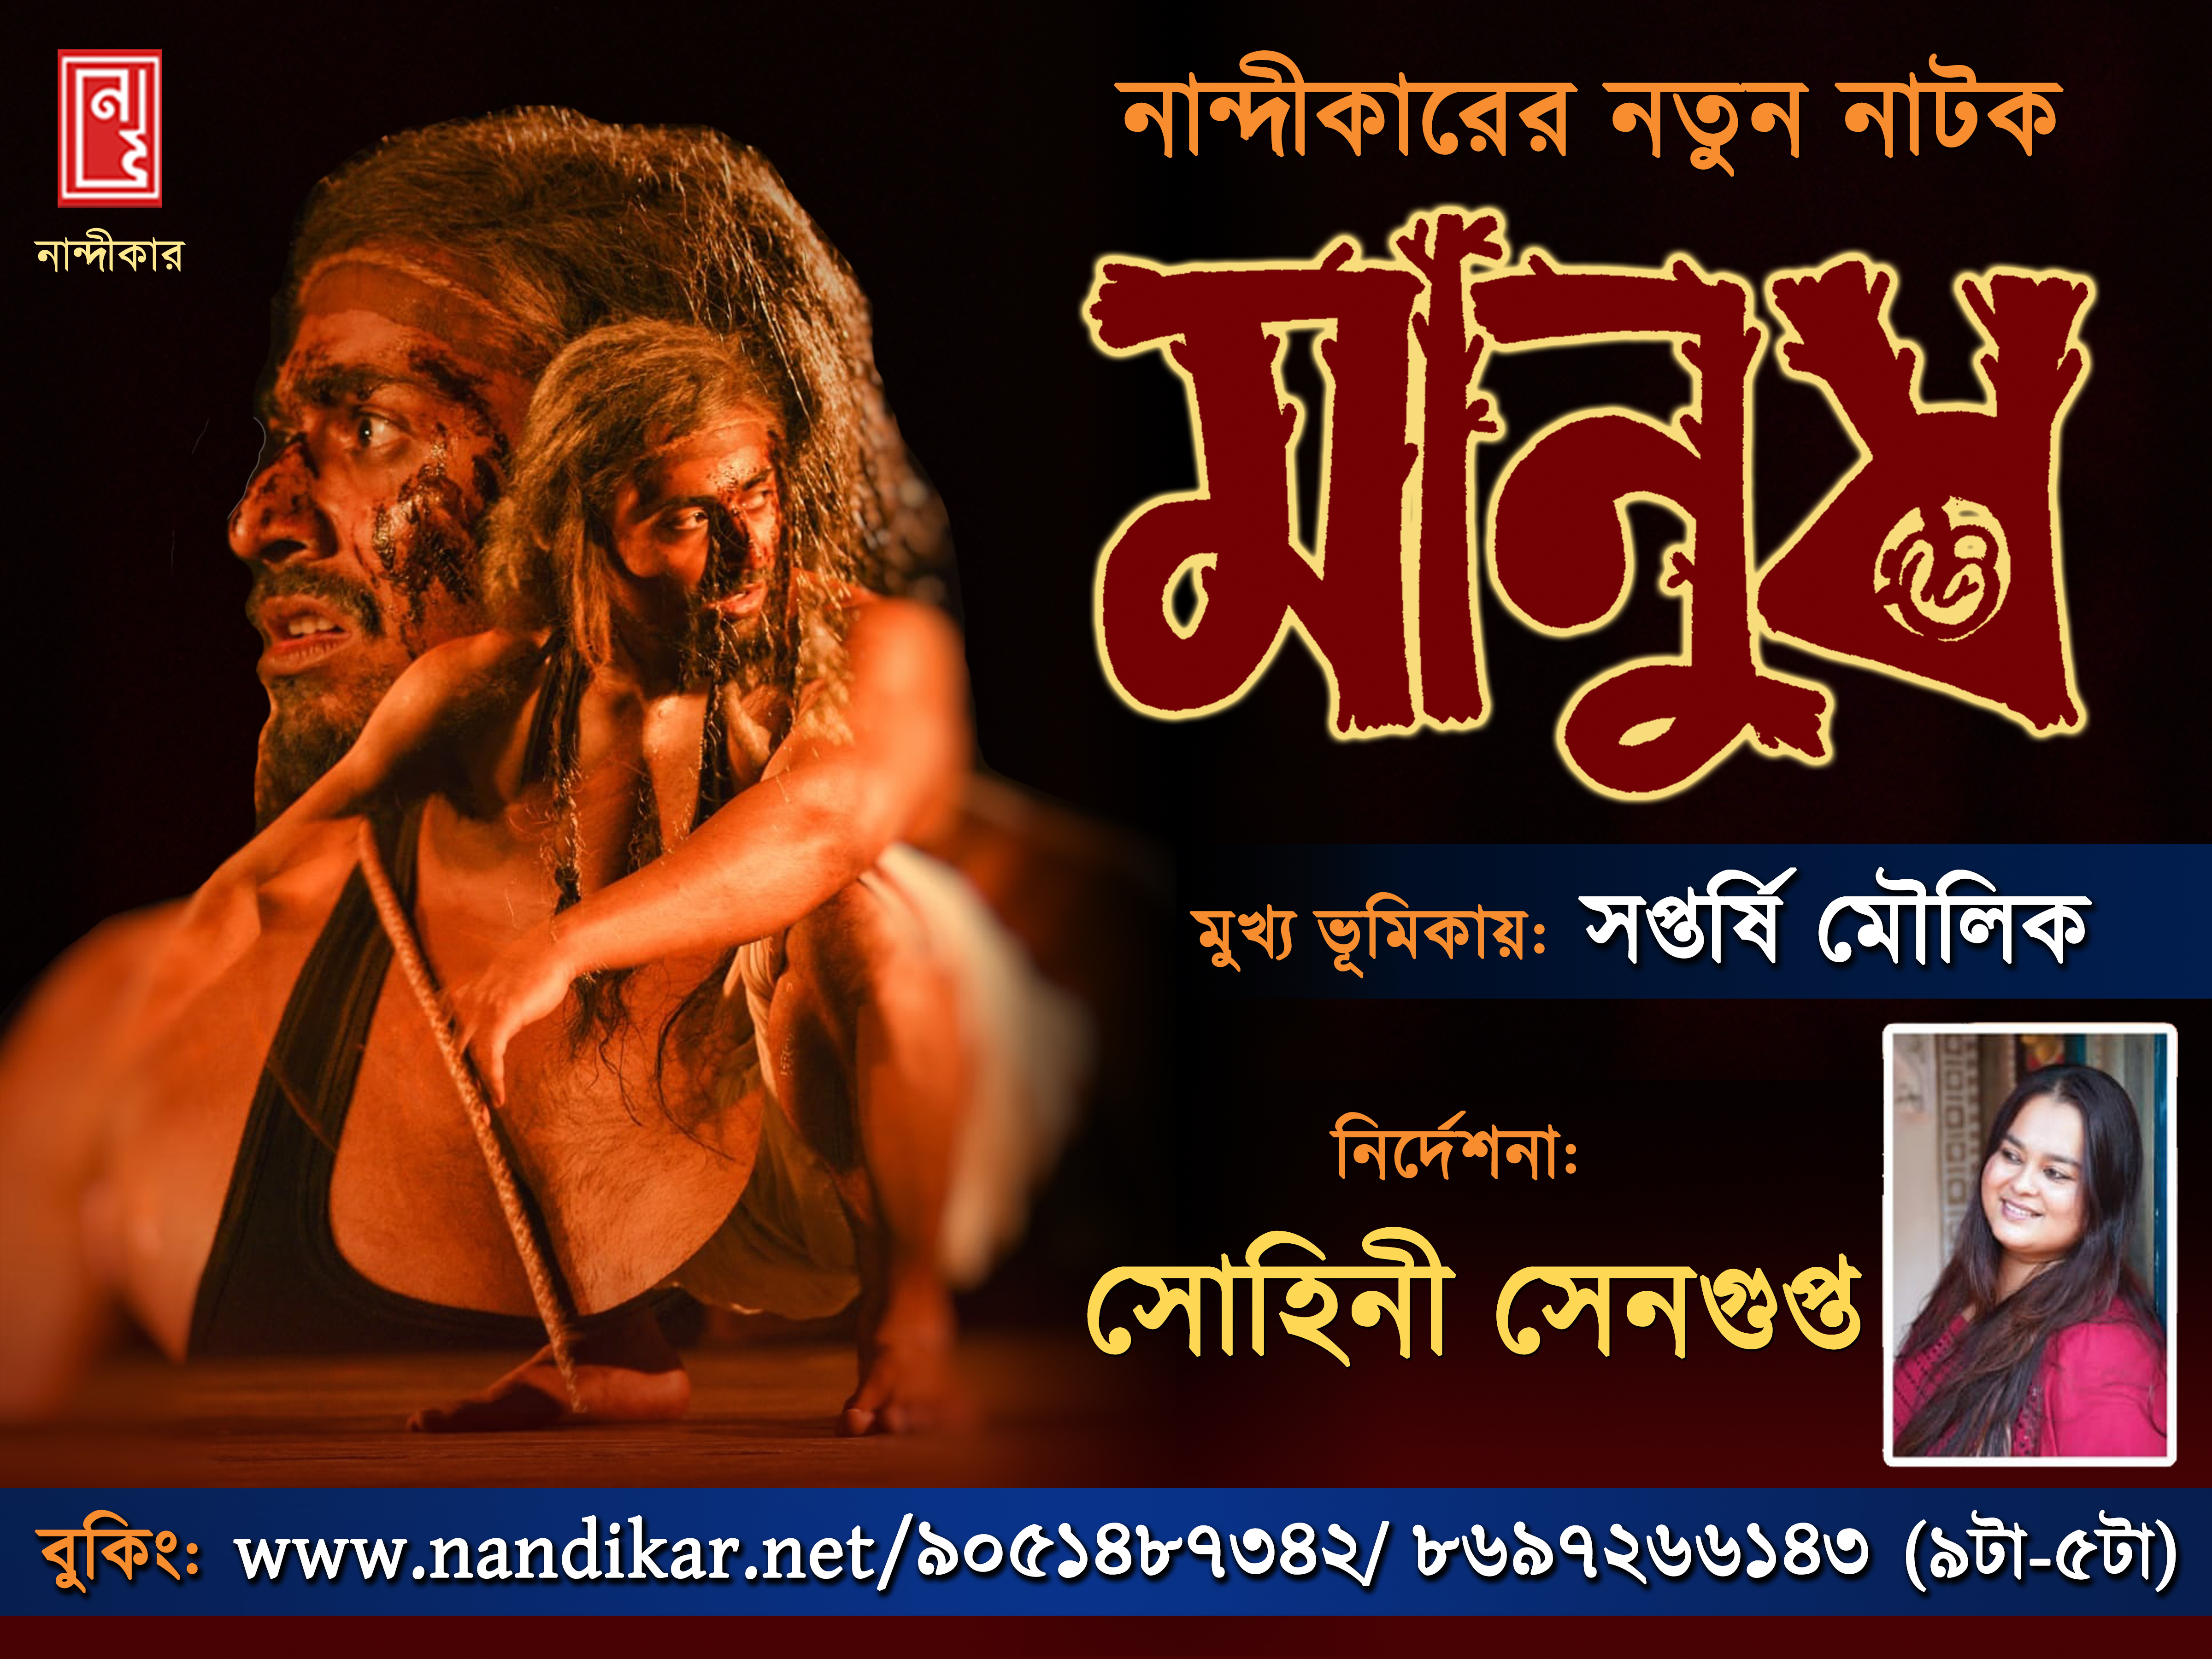 Nandikar's Latest Production 'Manush'